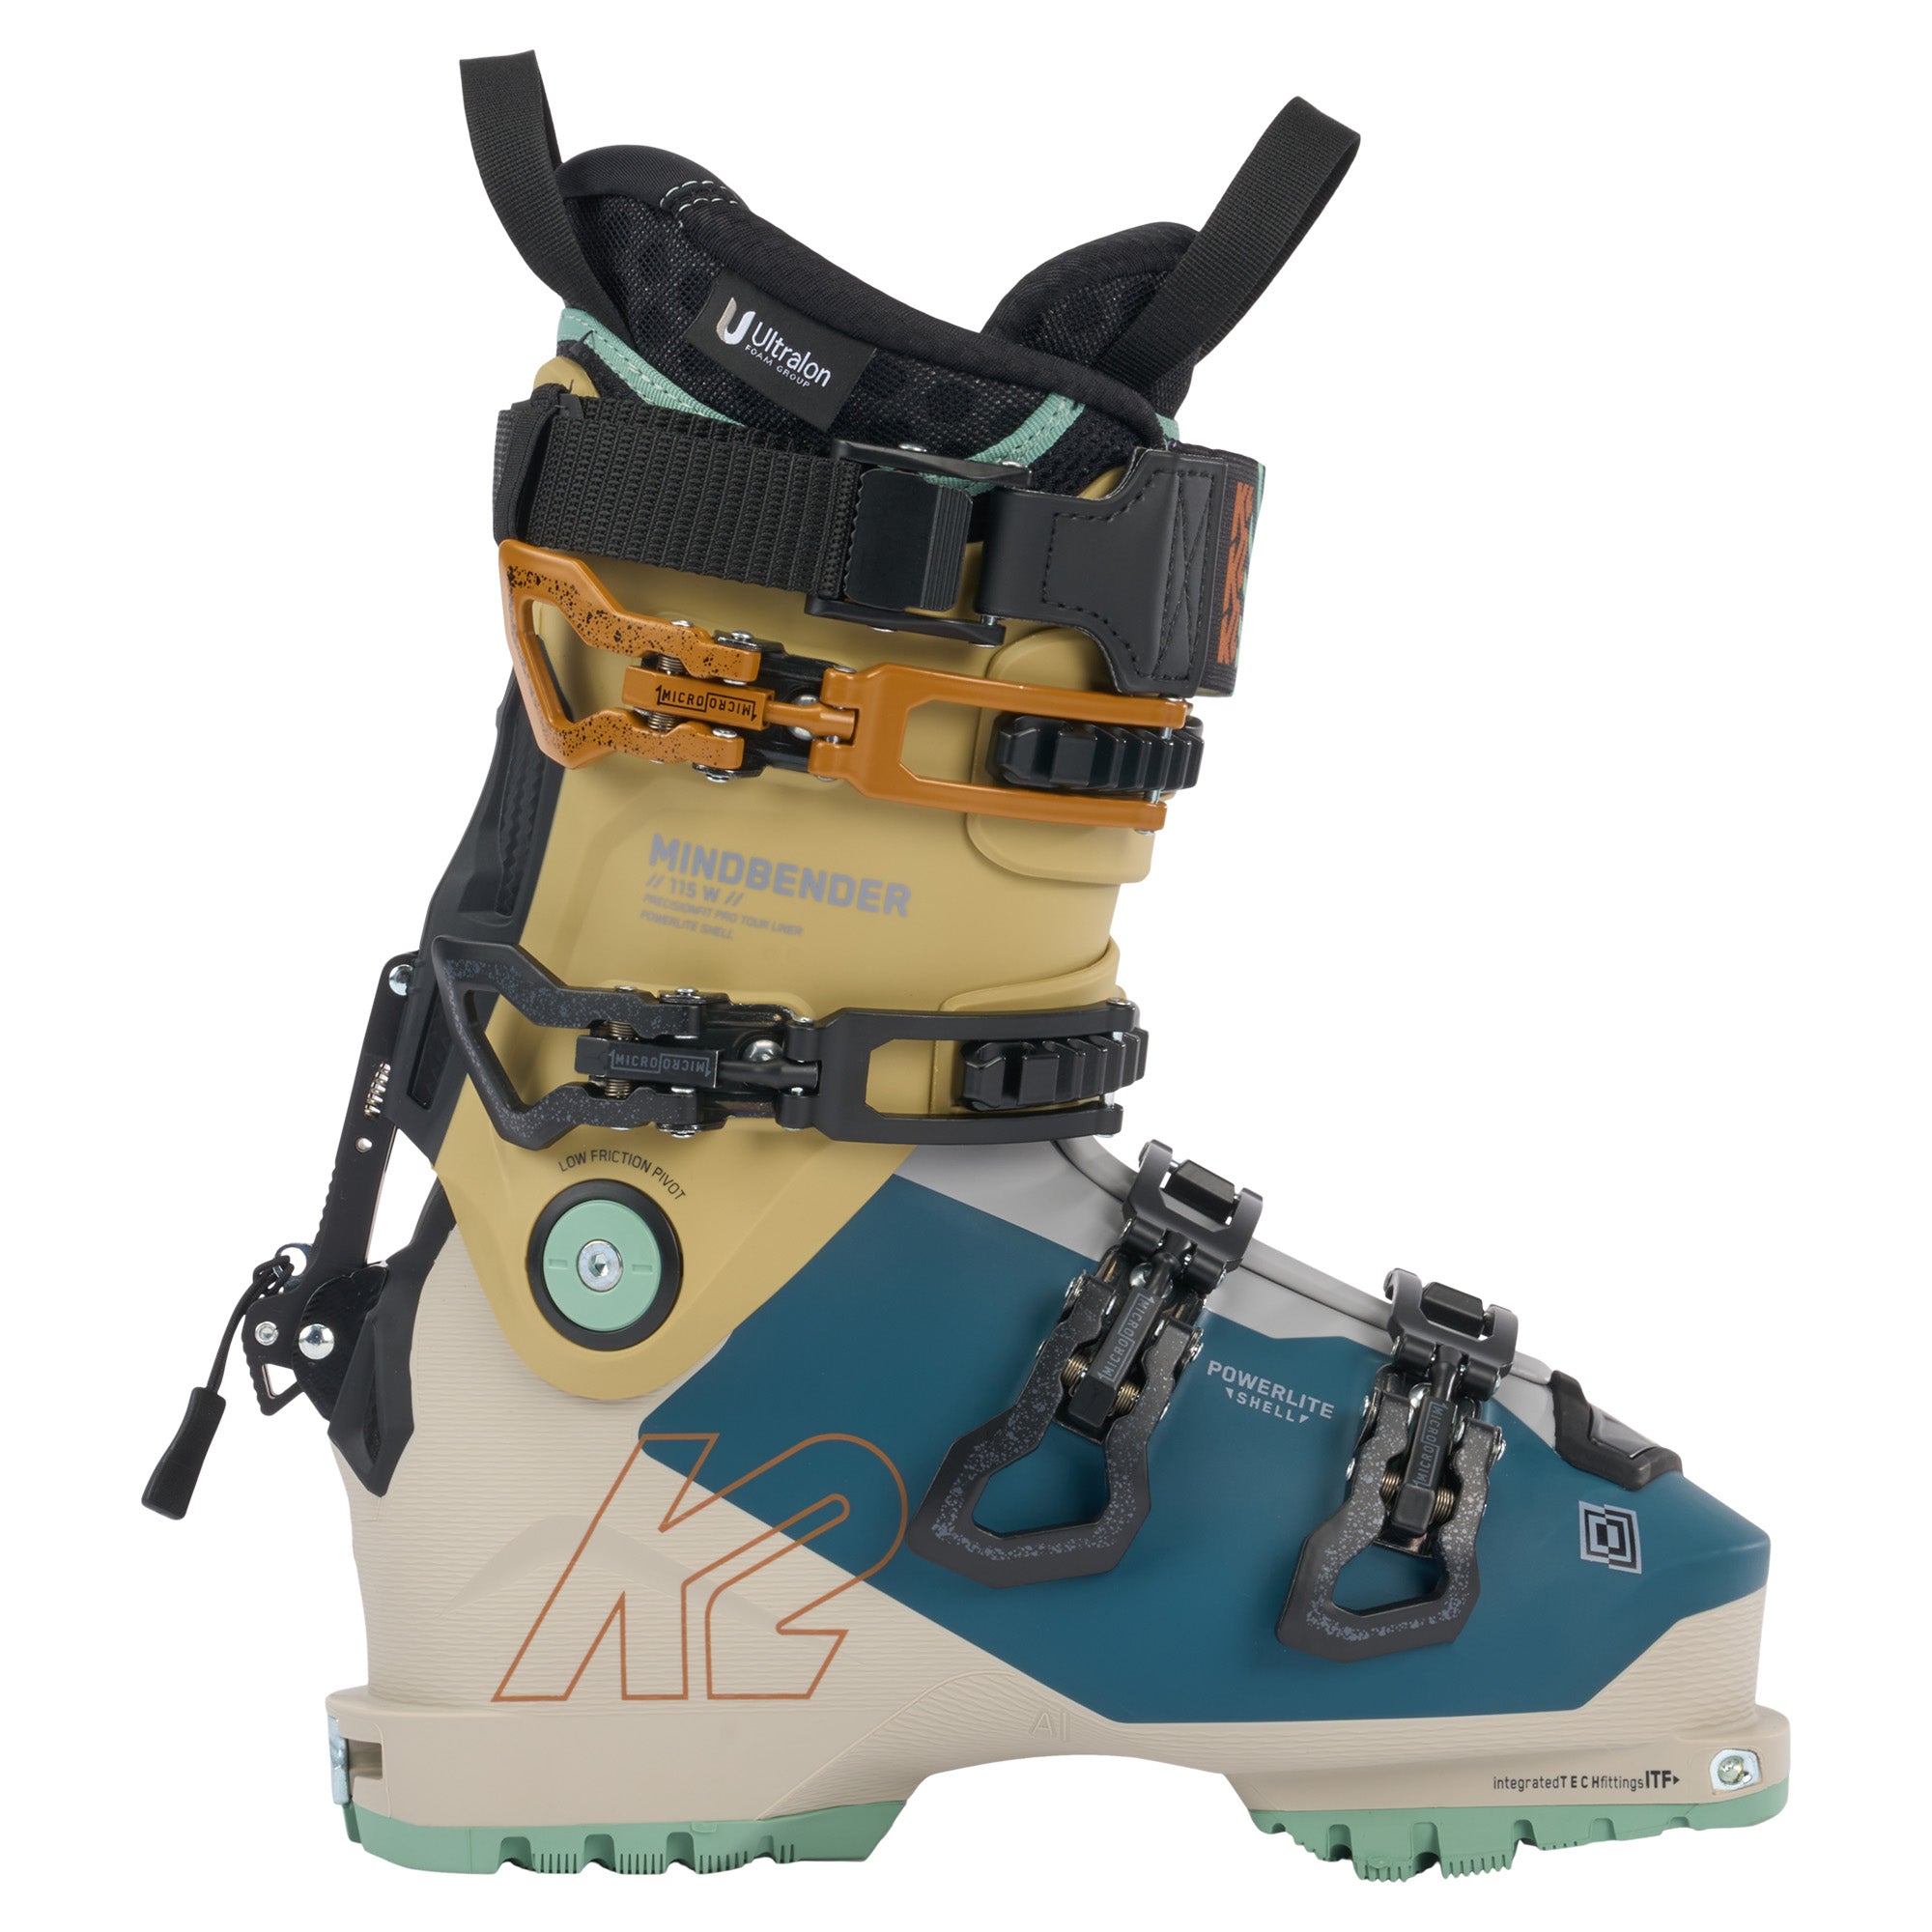 Dalbello Lupo AX HD Ski Boot 2023